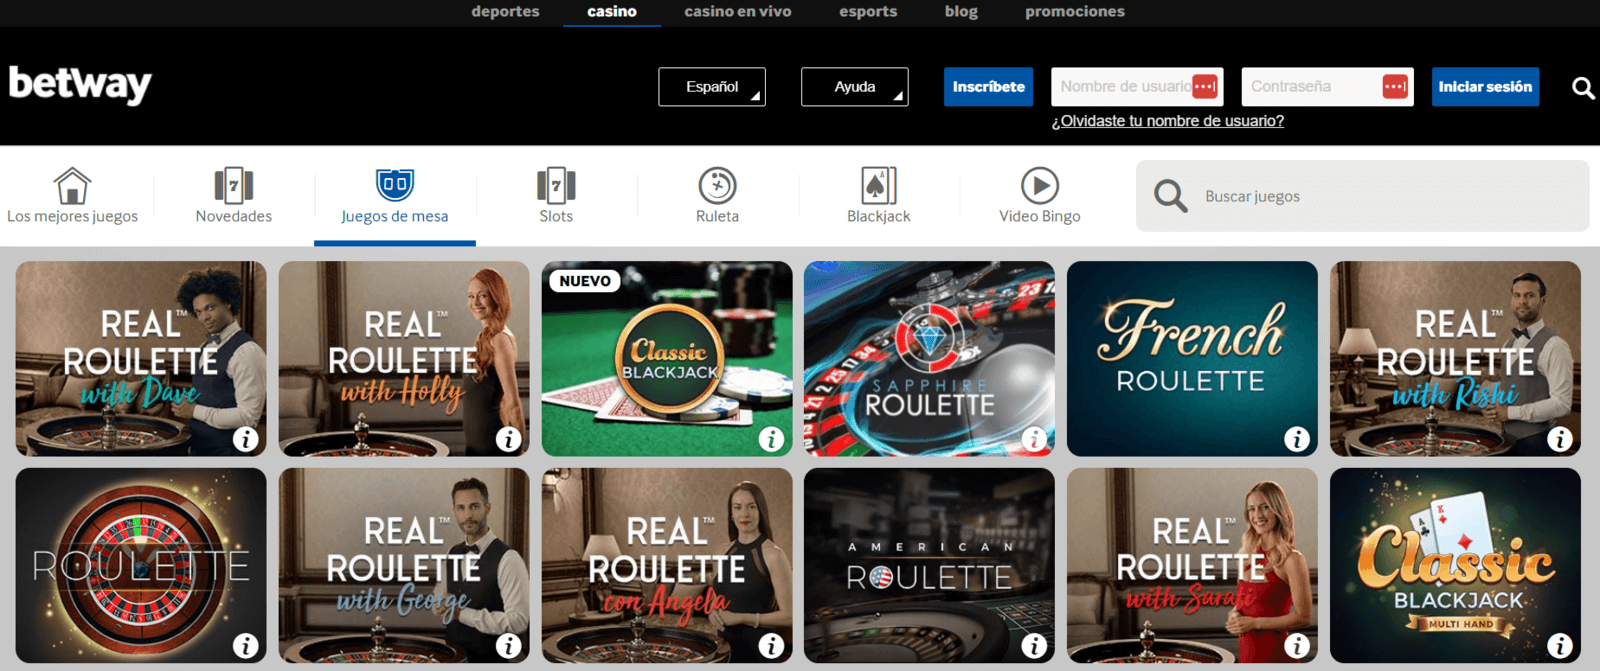 Juegos de casino Betway online en España